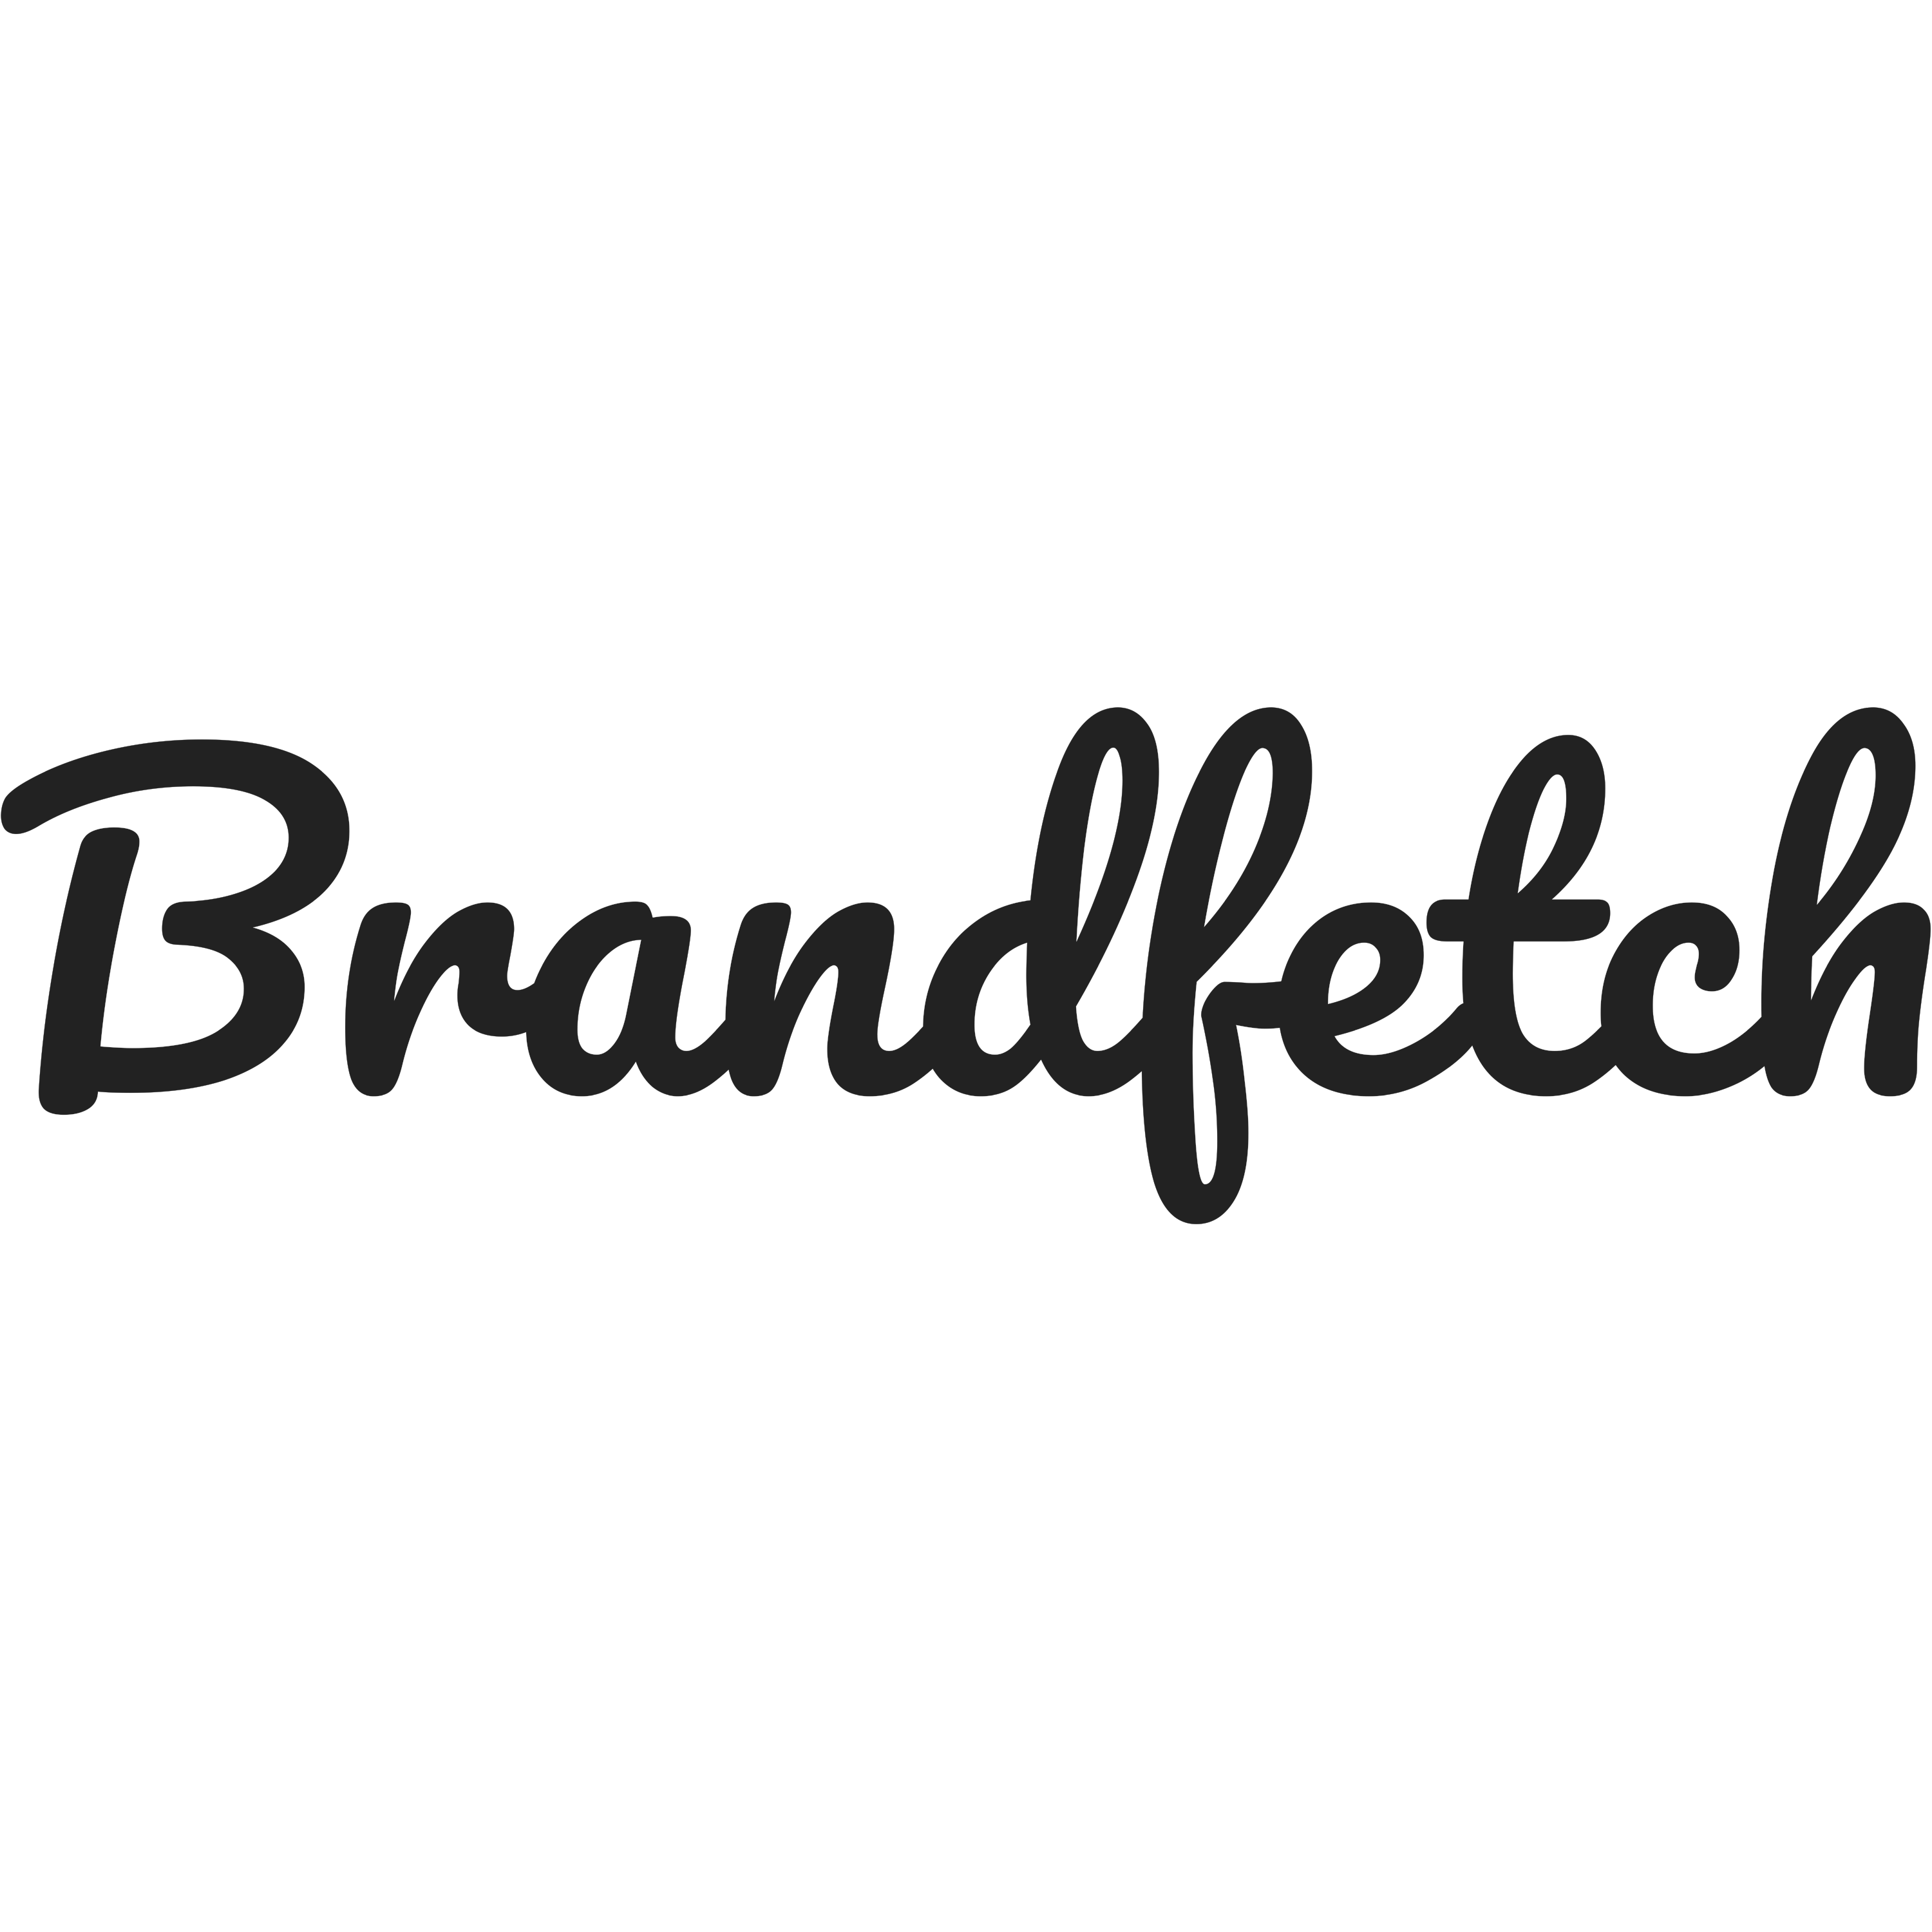 Brandfetch Logo Transparent Image